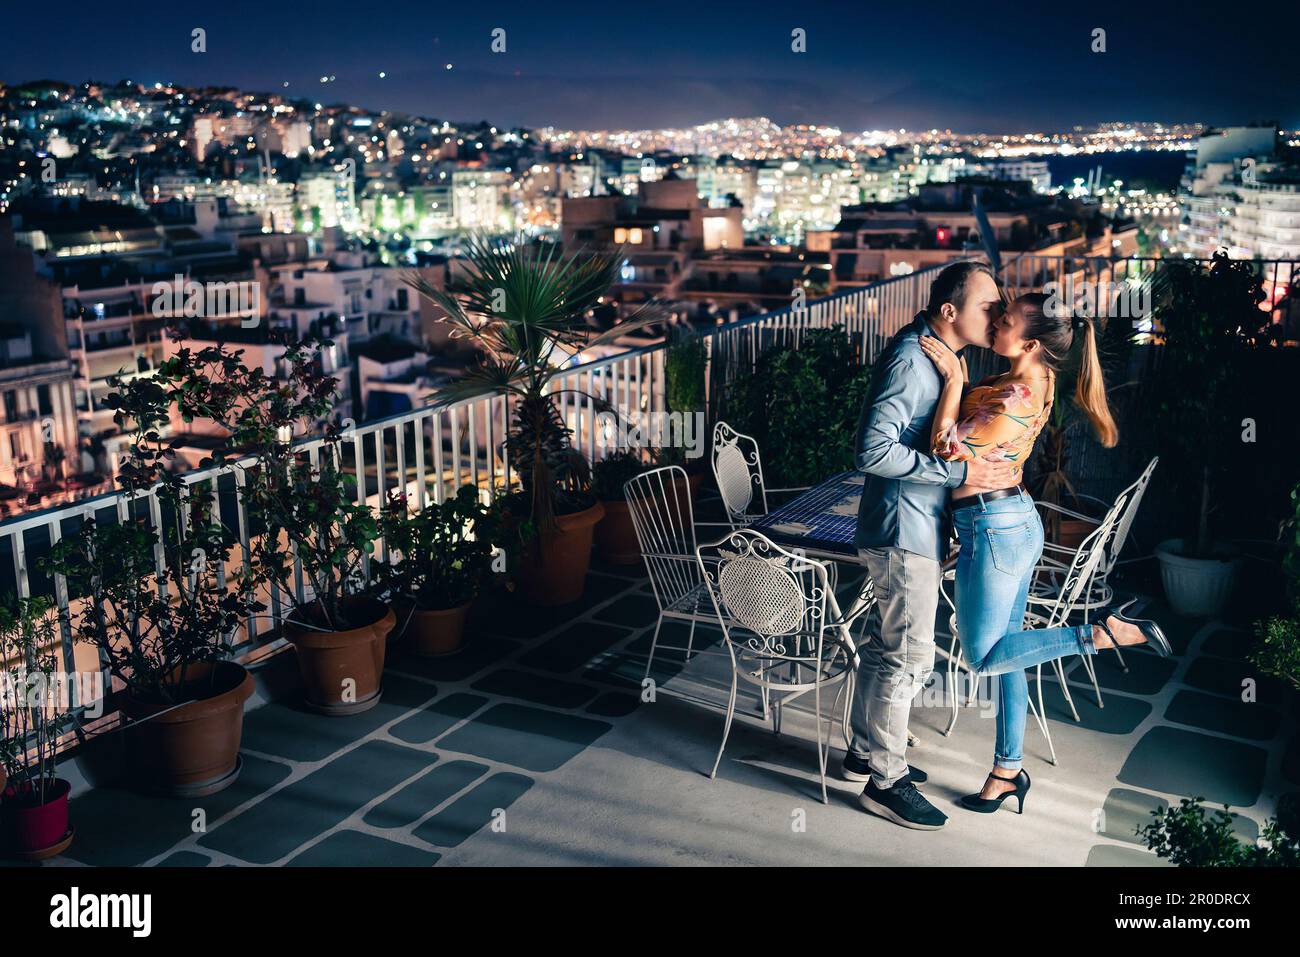 Ein Paar bei Nacht, Blick auf die Lichter der Stadt. Romantisches Date oder Heiratsantrag. Mann und Frau küssen und umarmen sich auf dem Balkon oder der Dachterrasse. Dunkelblauer Himmel. Stockfoto